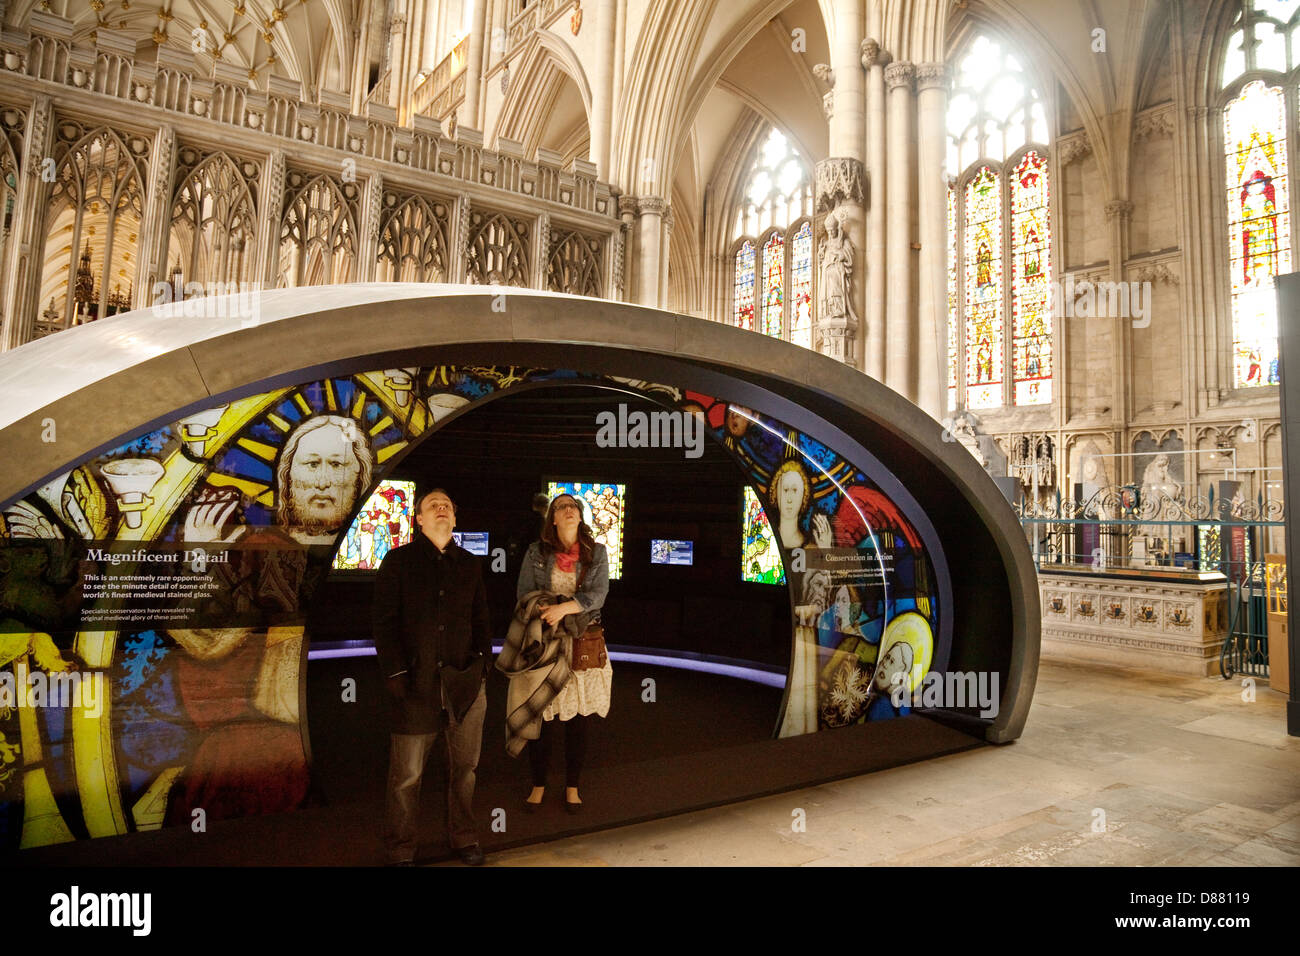 L'Orb, donnant des informations sur la cathédrale, l'intérieur, la cathédrale York Minster, York, Yorkshire UK Banque D'Images